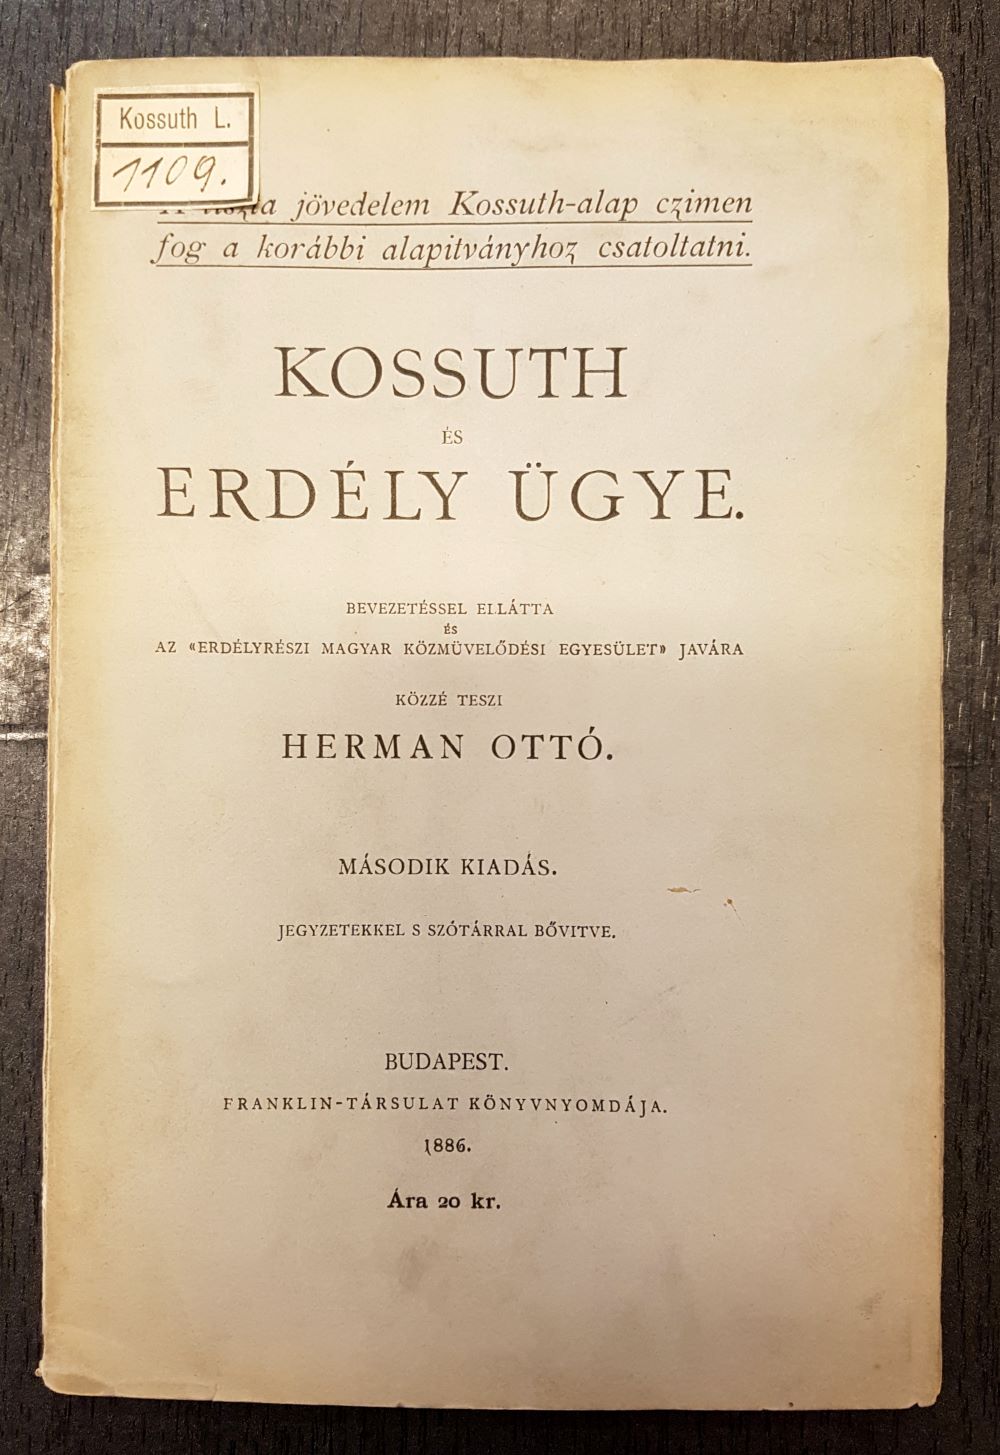 Kossuth és Erdély ügye, bevezetővel ellátta Herman Ottó, 2. kiad. Budapest, Franklin, 1886. Címlap – Törzsgyűjtemény https://nektar.oszk.hu/hu/manifestation/3853061